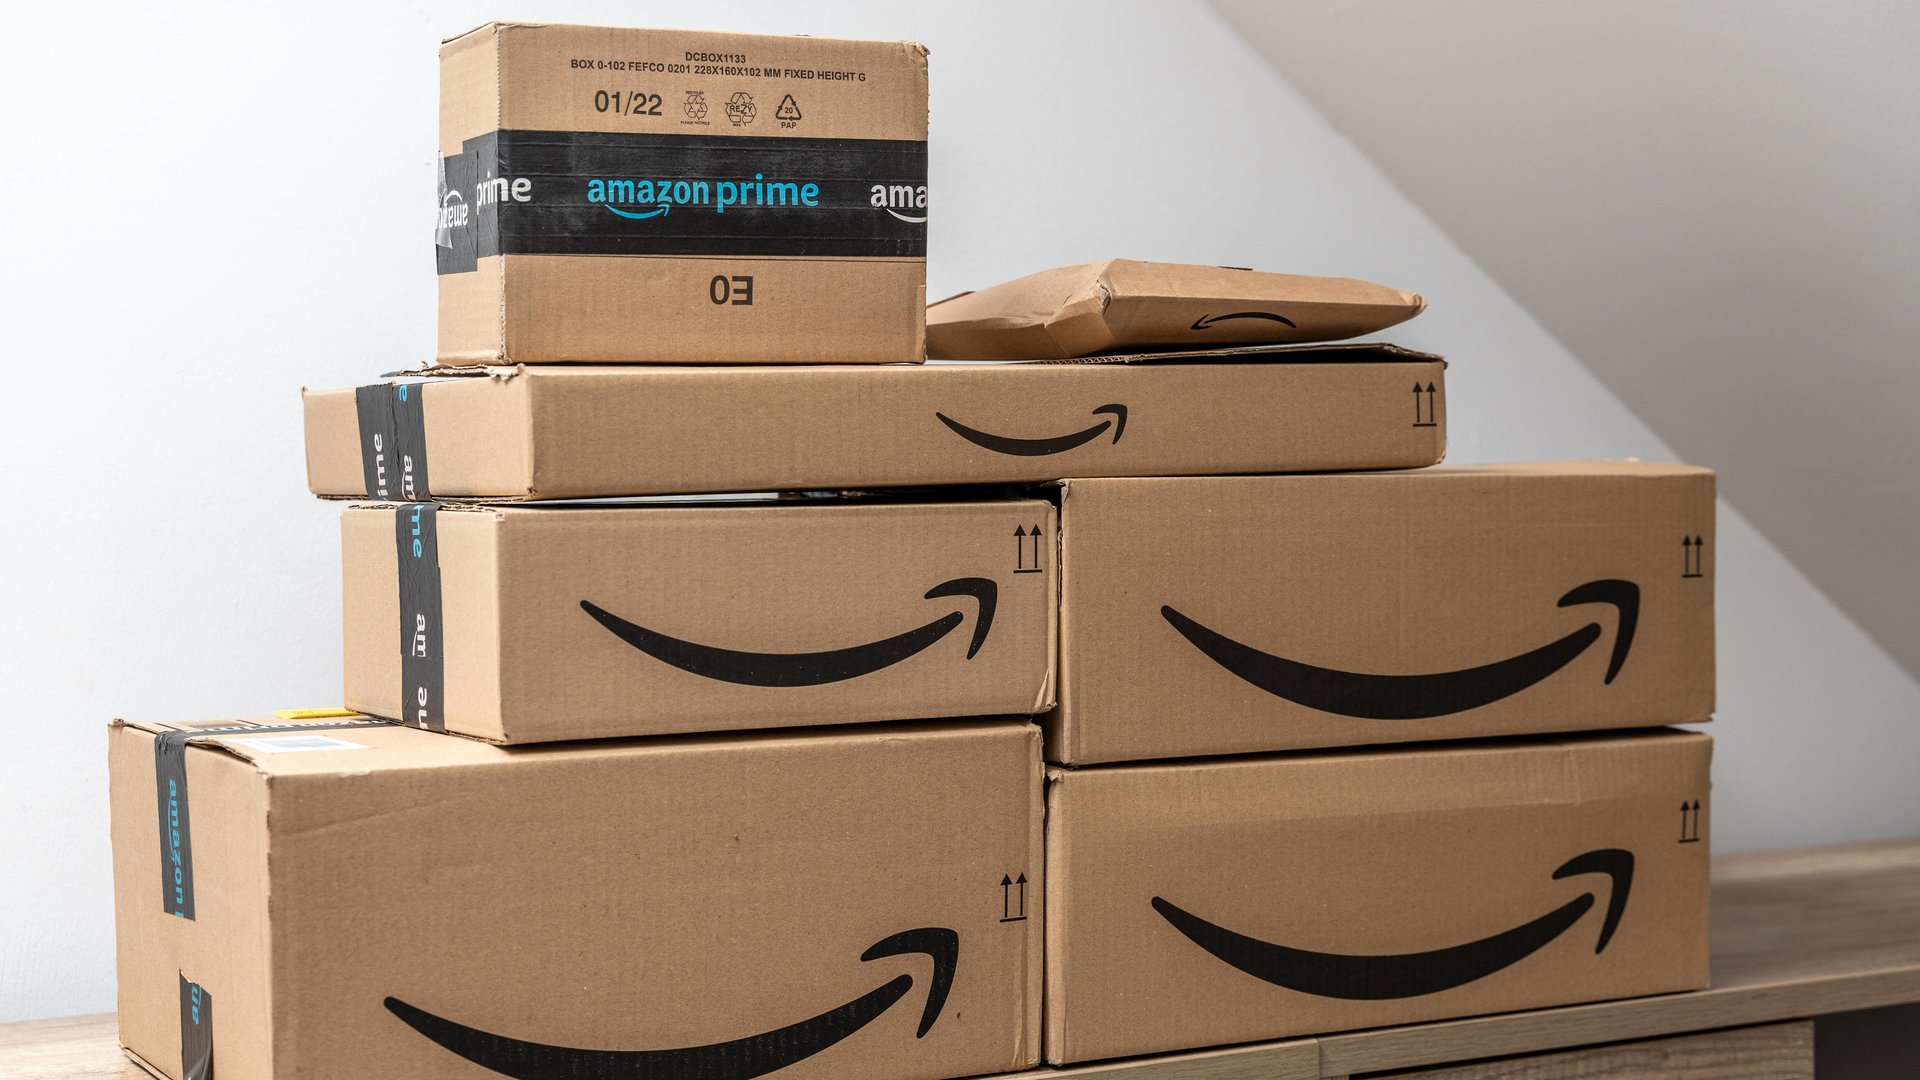 #Letzte Chance: 26 grandiose Last-Minute-Schnäppchen zum Prime Day auf Amazon sichern